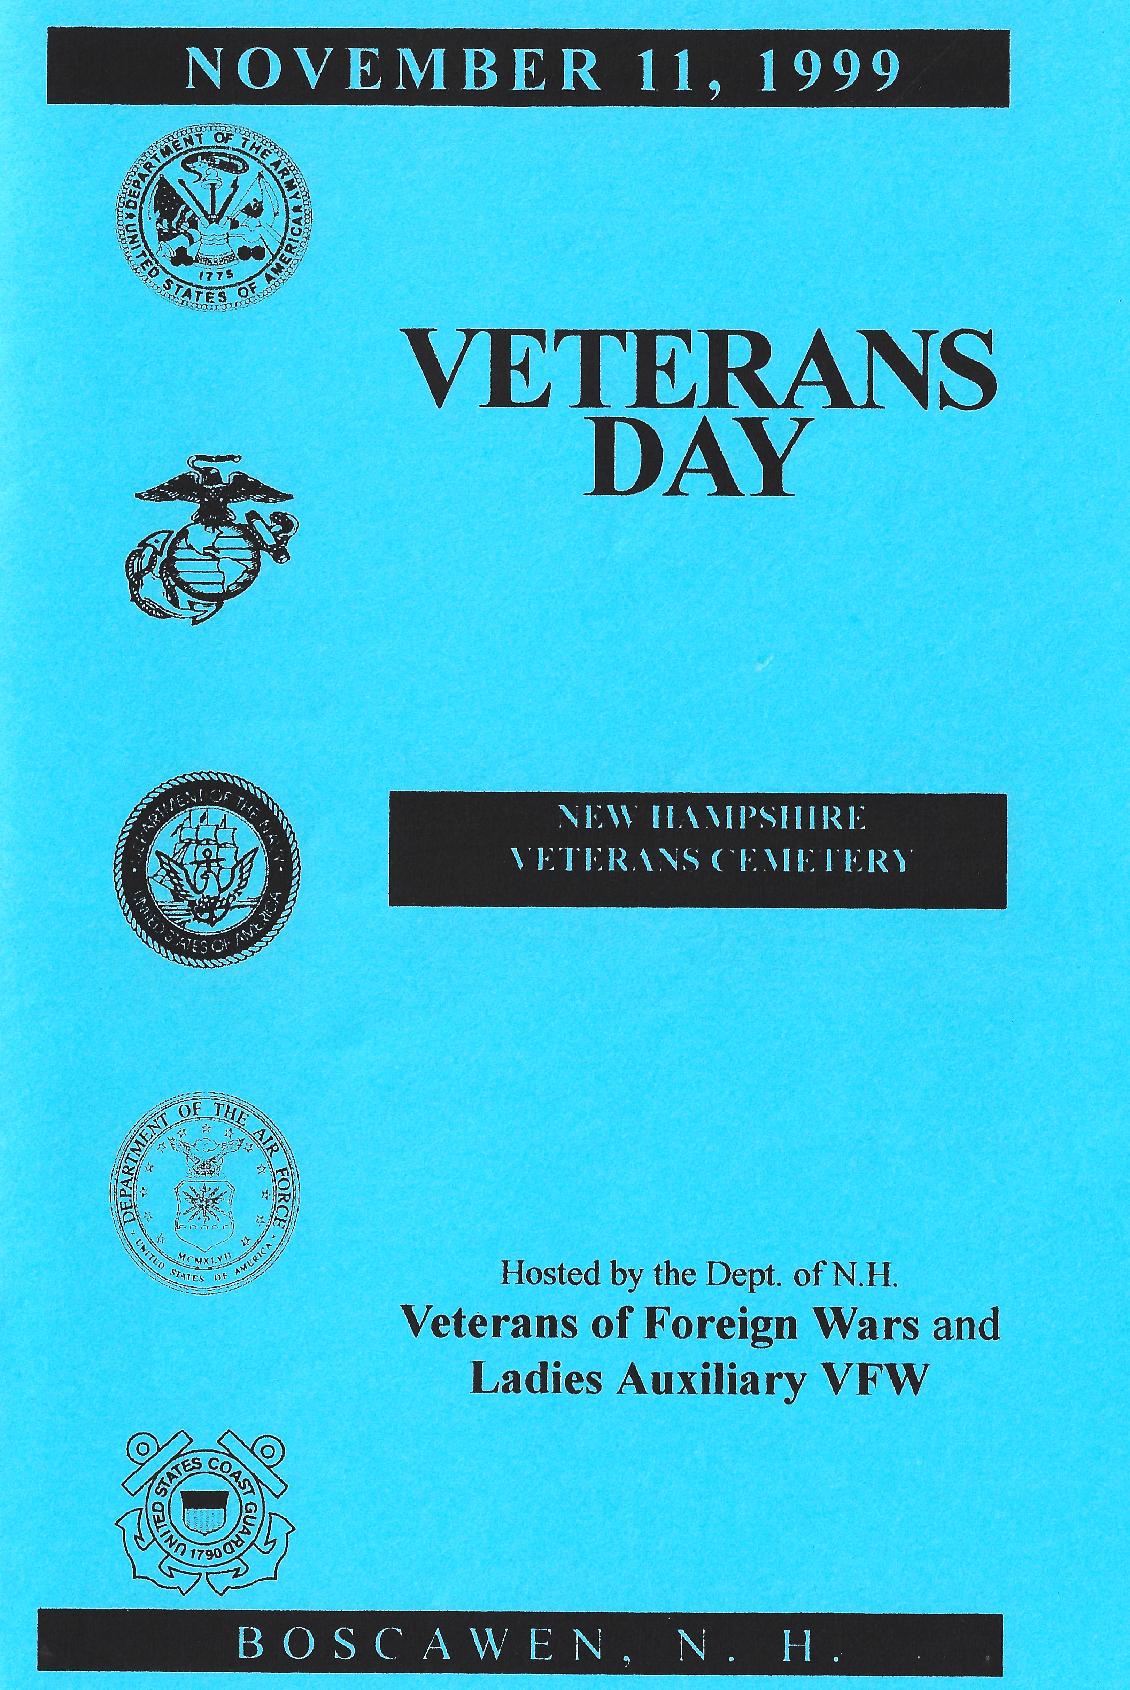 NH State Veterans Cemetery Veterans Day Program 1999